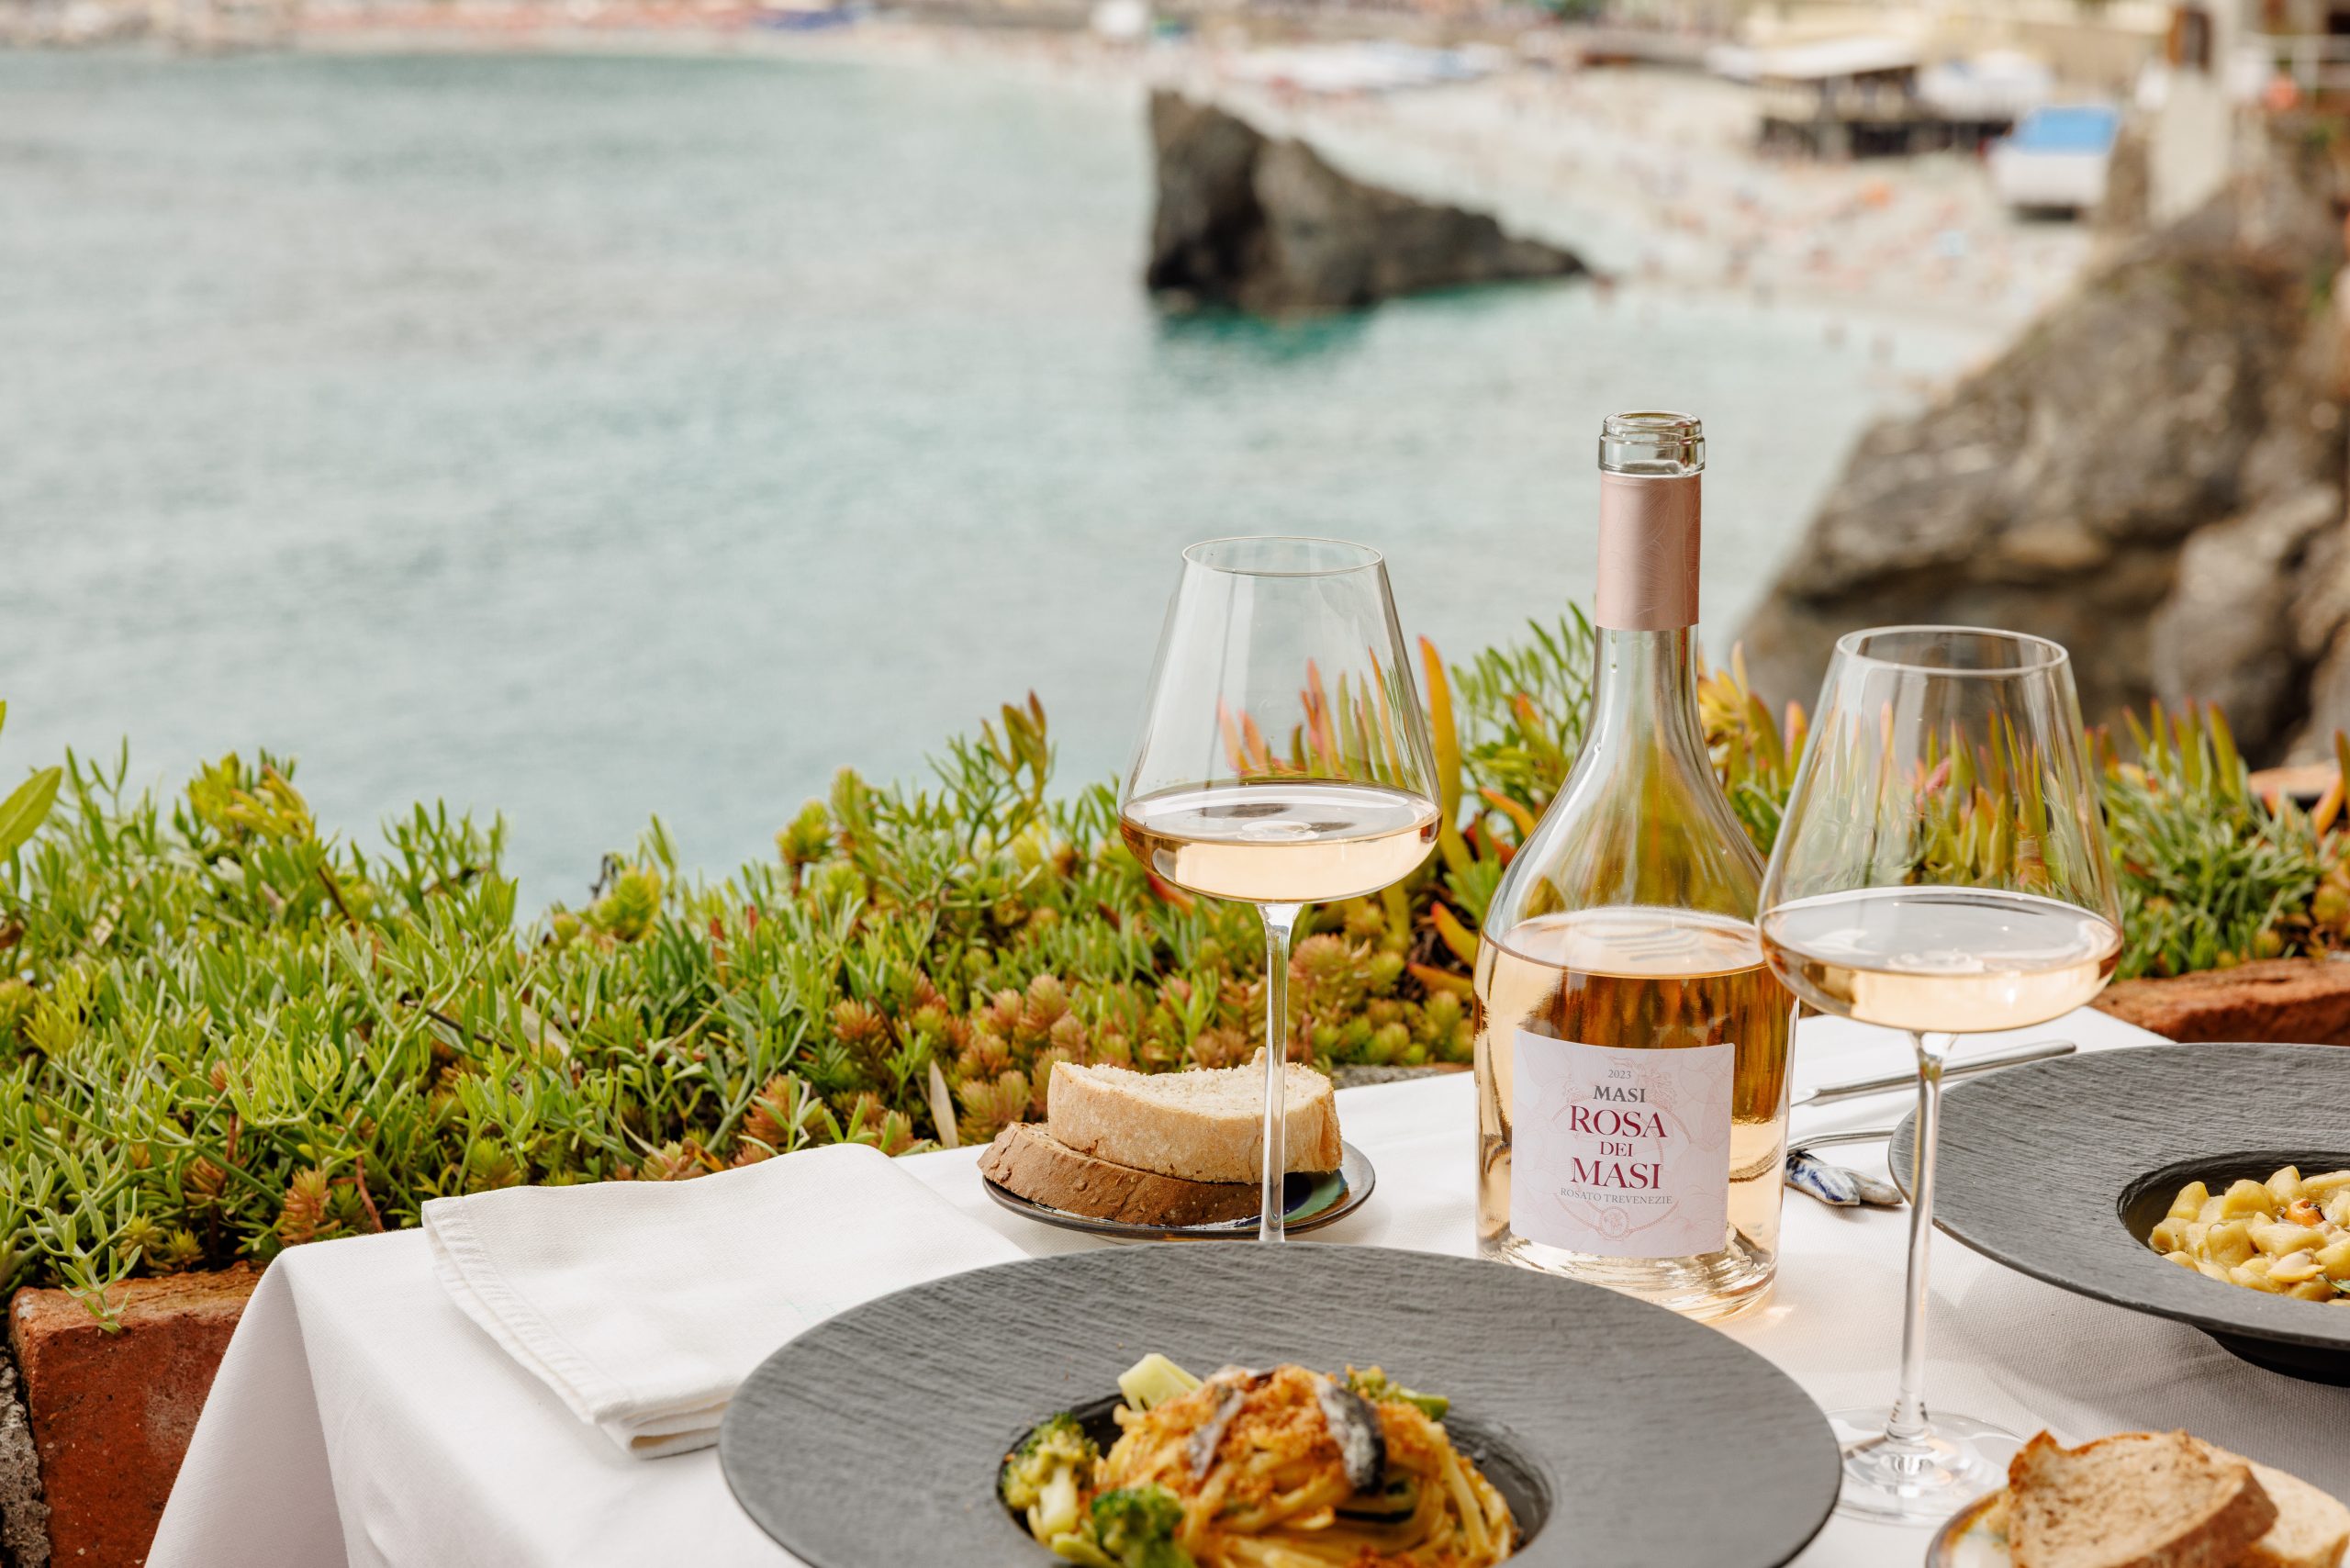 Una mesa está preparada para una comida con vistas a una bahía. Sobre ella hay una botella de Rosa dei Masi, dos copas de vino, pan, un plato de pasta y servilletas.